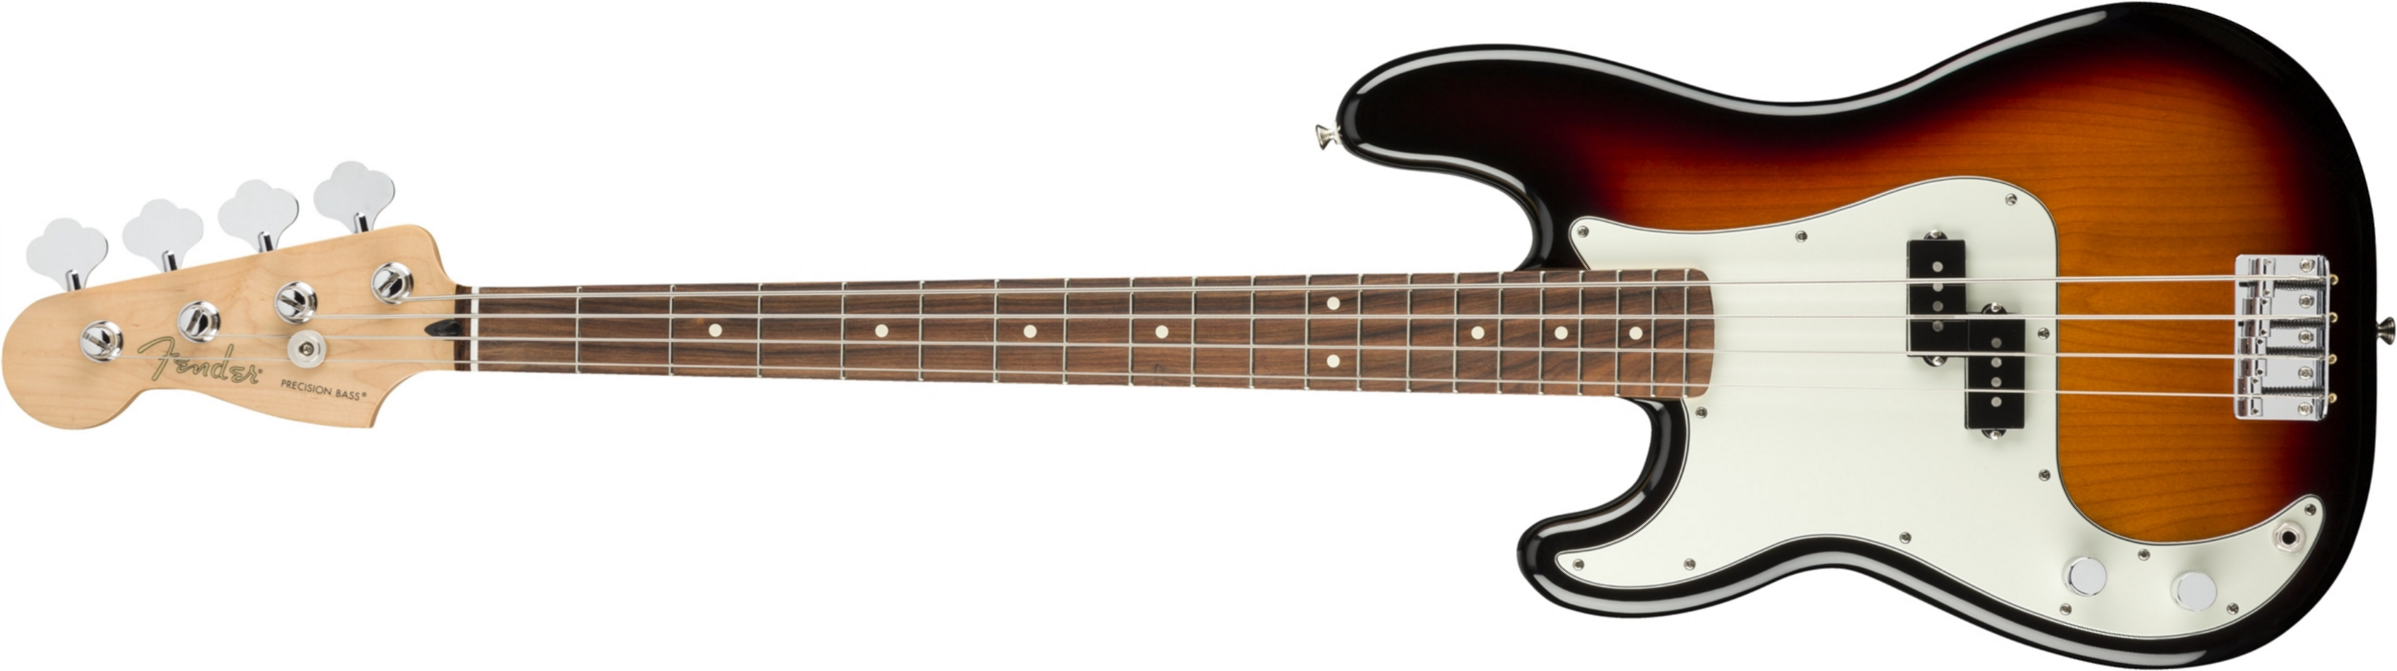 Fender Precision Bass Player Lh Gaucher Mex Pf - 3-color Sunburst - Bajo eléctrico de cuerpo sólido - Main picture